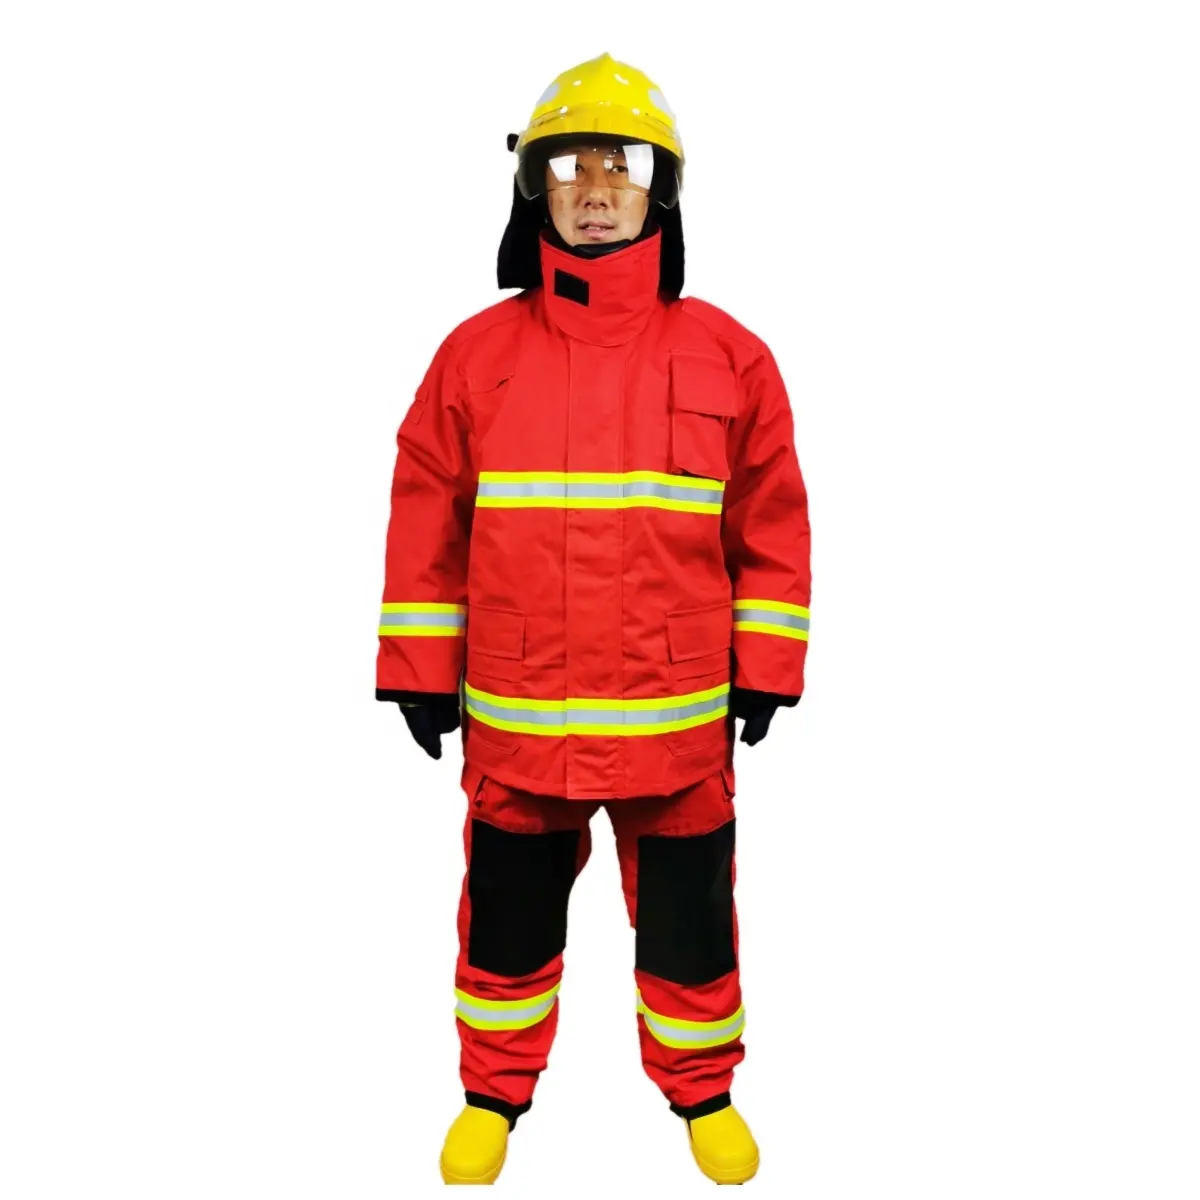 सनरीच उच्च गुणवत्ता वाले फायर फाइटर सुरक्षात्मक कपड़े अरामिड फैब्रिक फायर फाइटिंग सुरक्षात्मक सूट बिक्री के लिए फायर सेफ्टी सूट